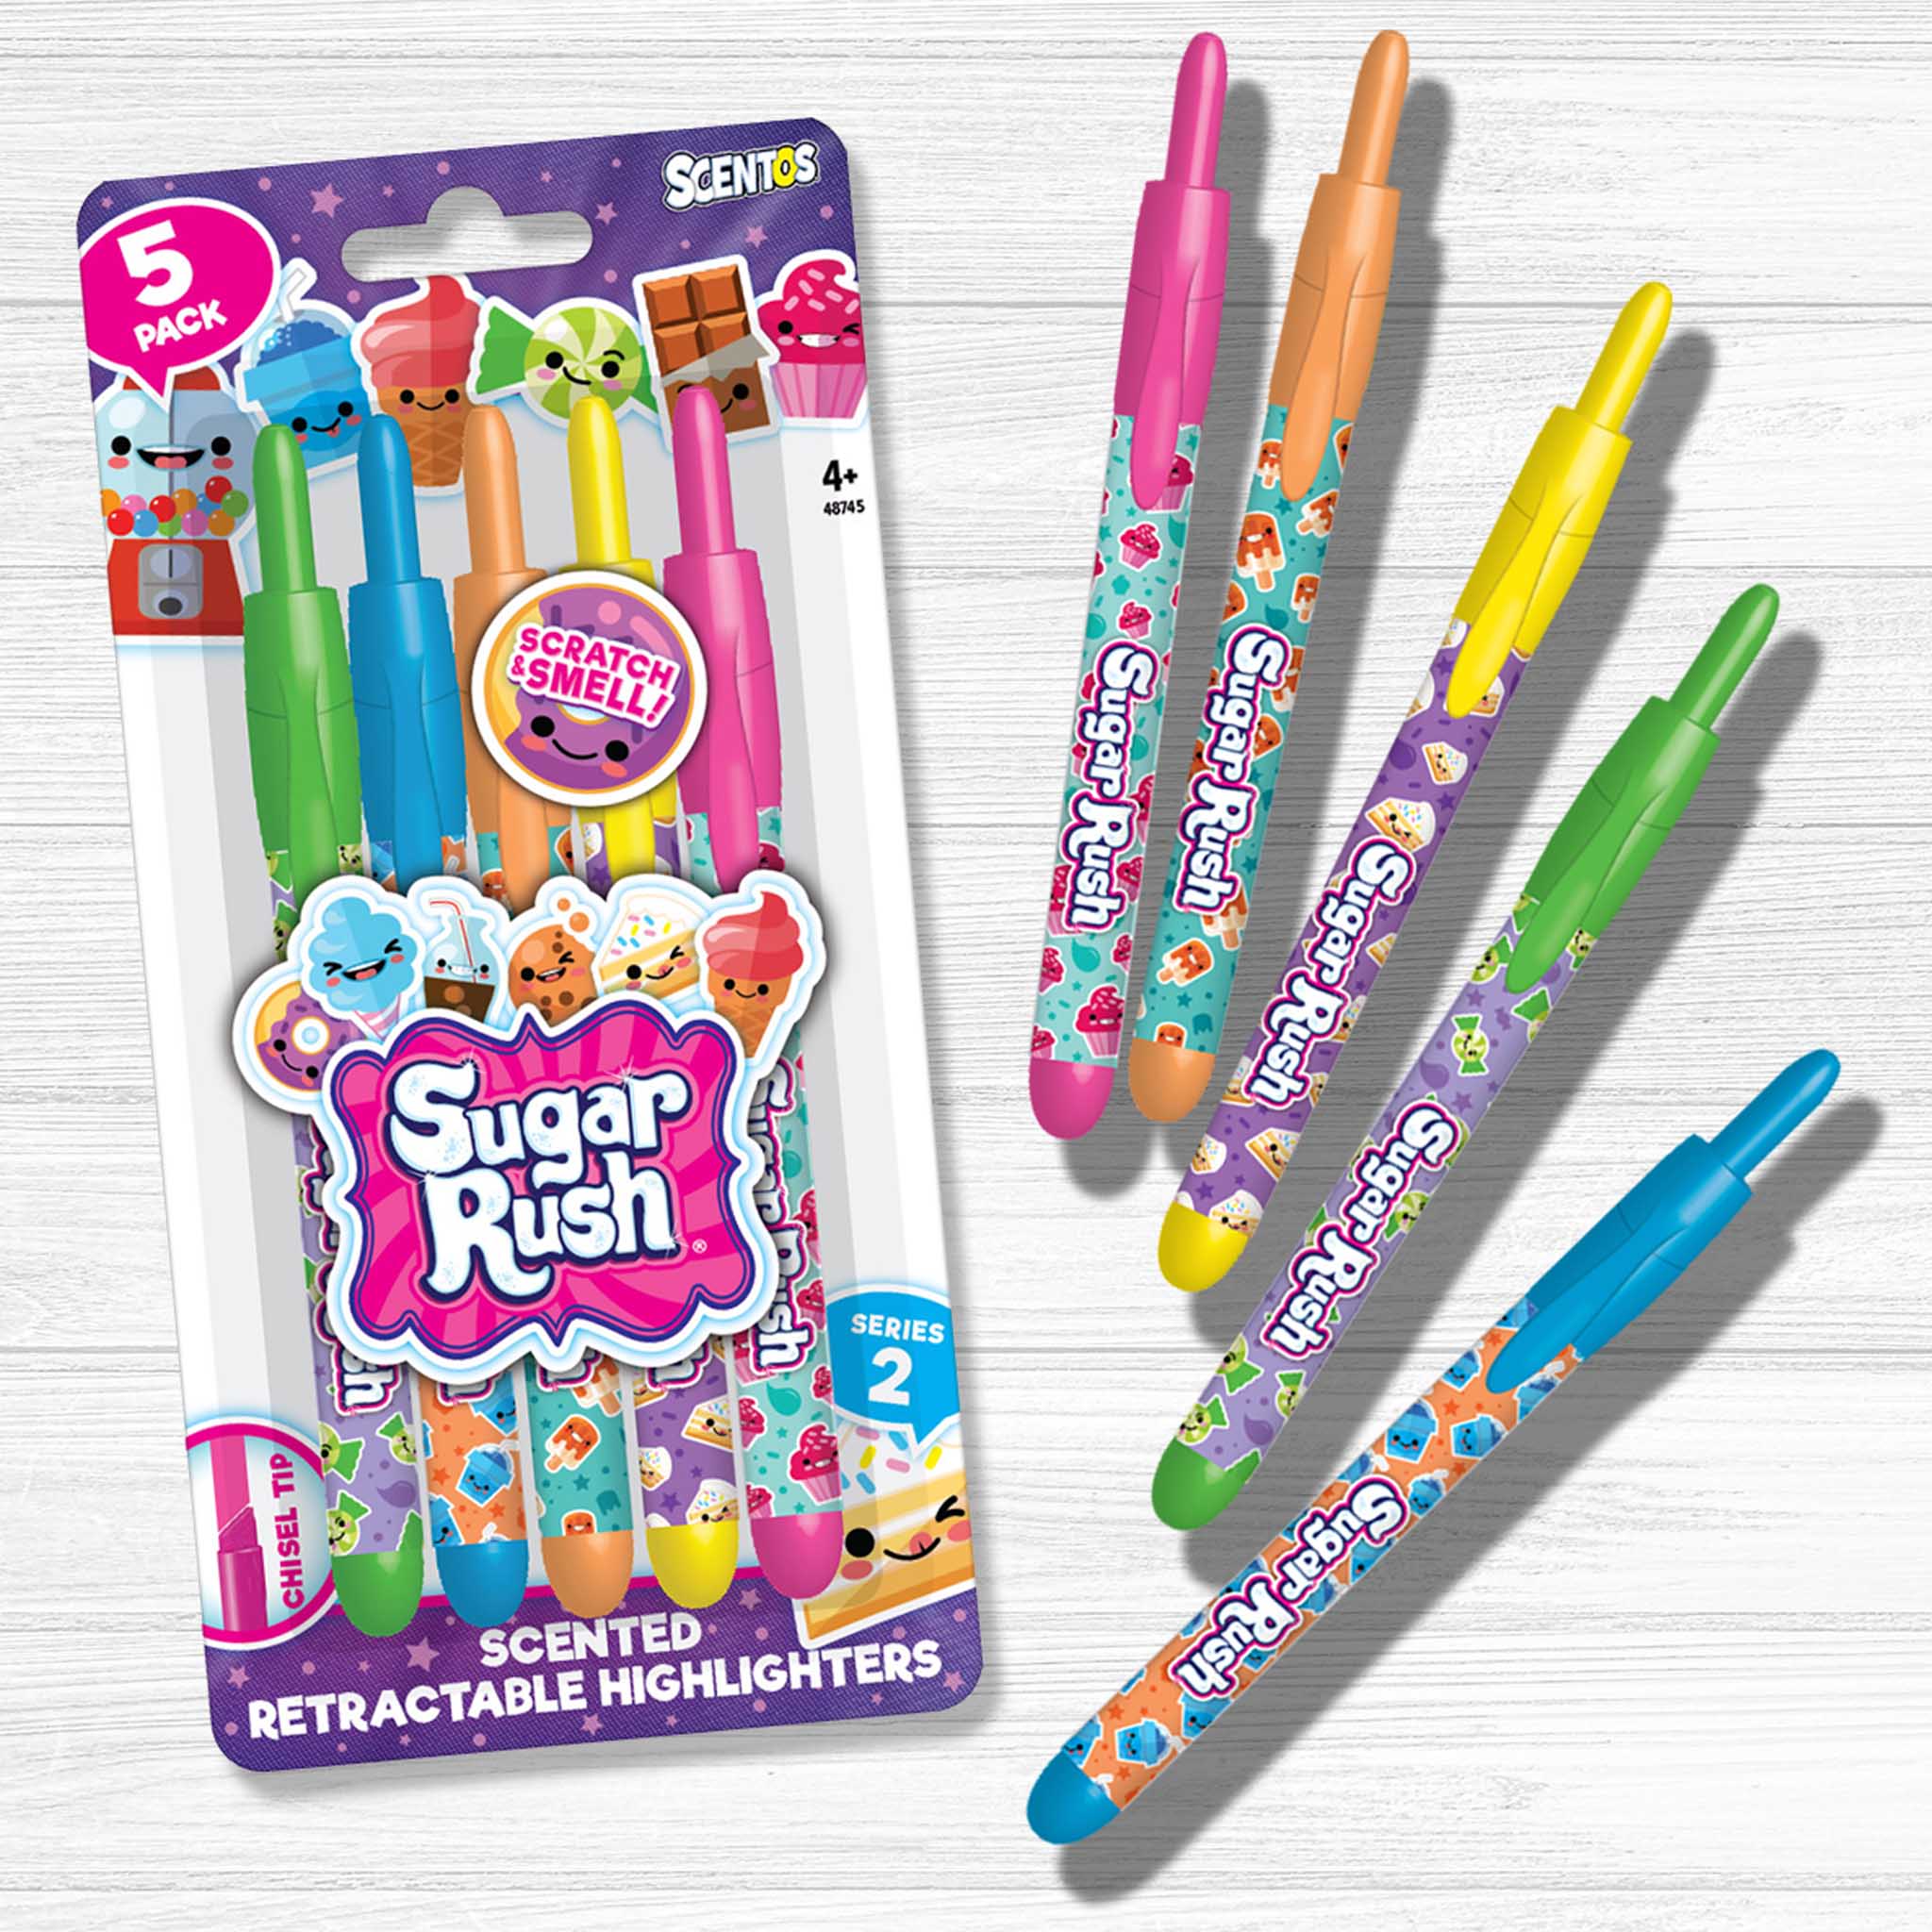 Sugar Rush 24pk Candy Scented Gel Pens : Target